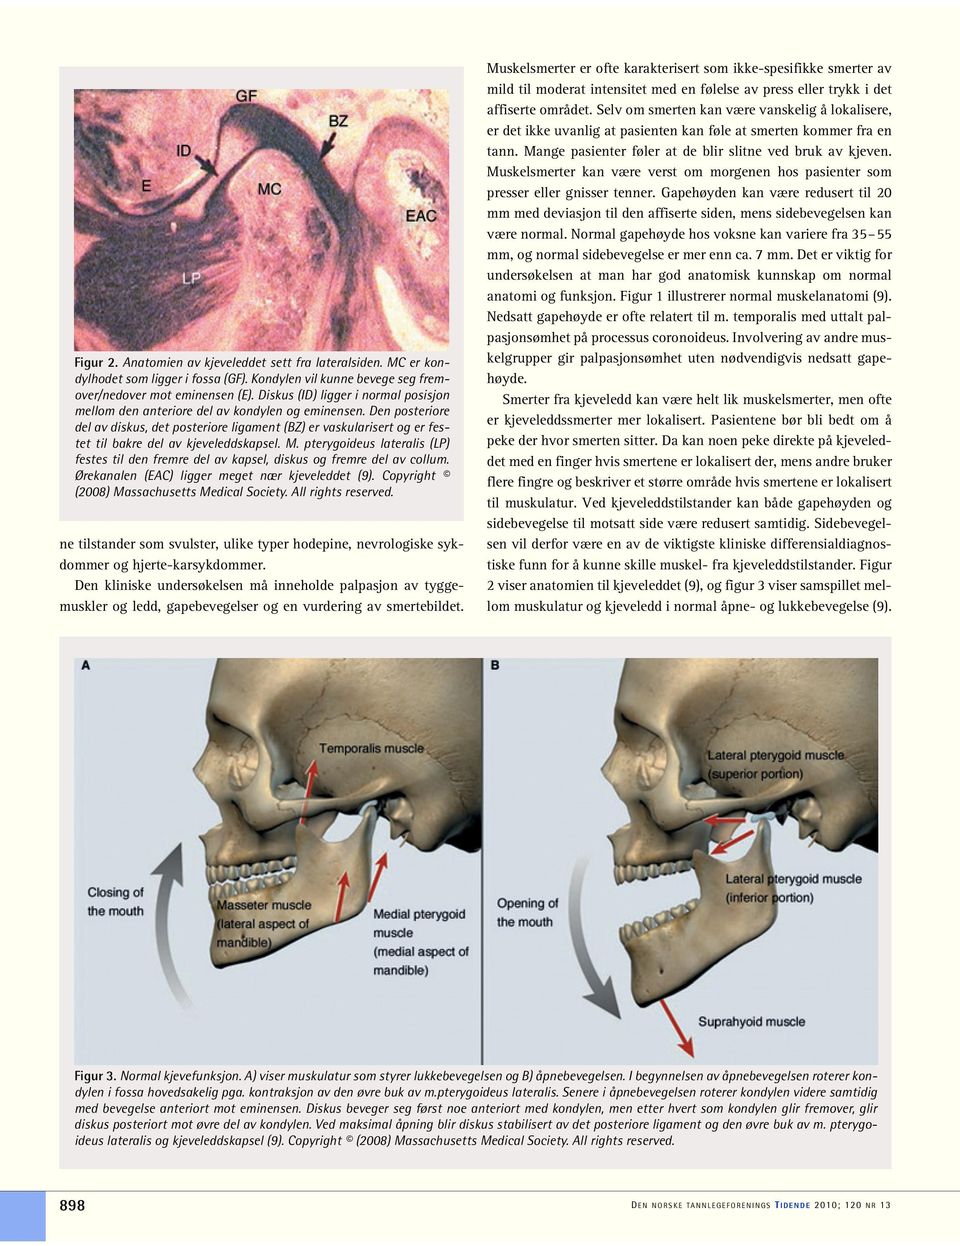 Den posteriore del av diskus, det posteriore ligament (BZ) er vaskularisert og er festet til bakre del av kjeveleddskapsel. M.